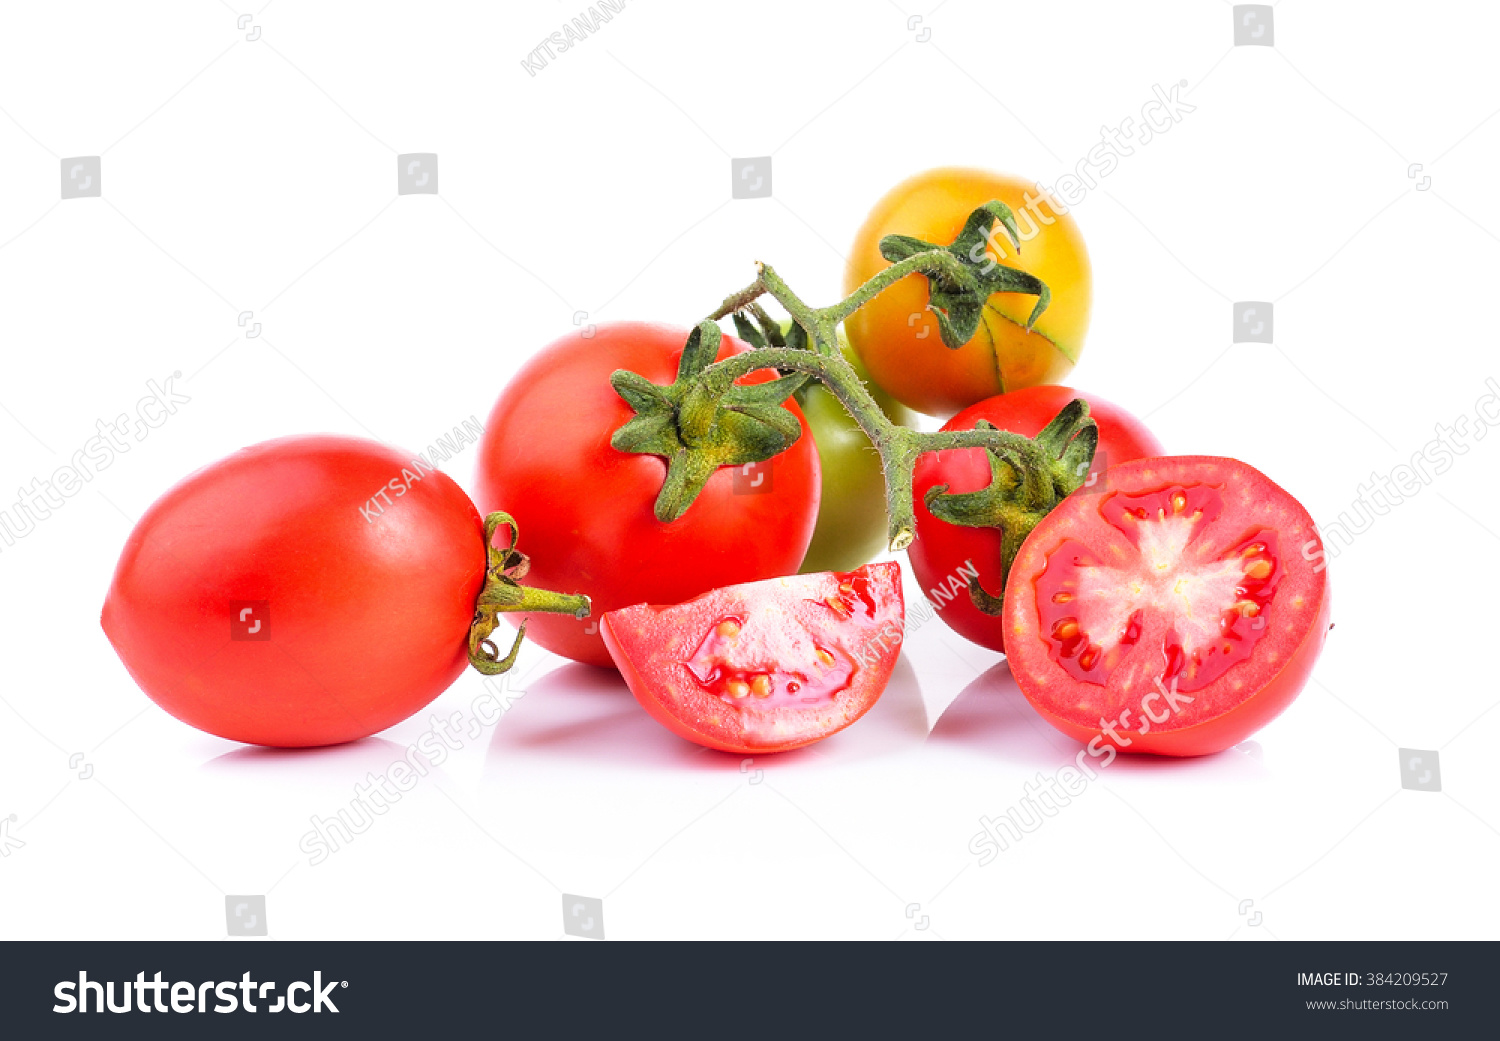 tomato on white background #384209527